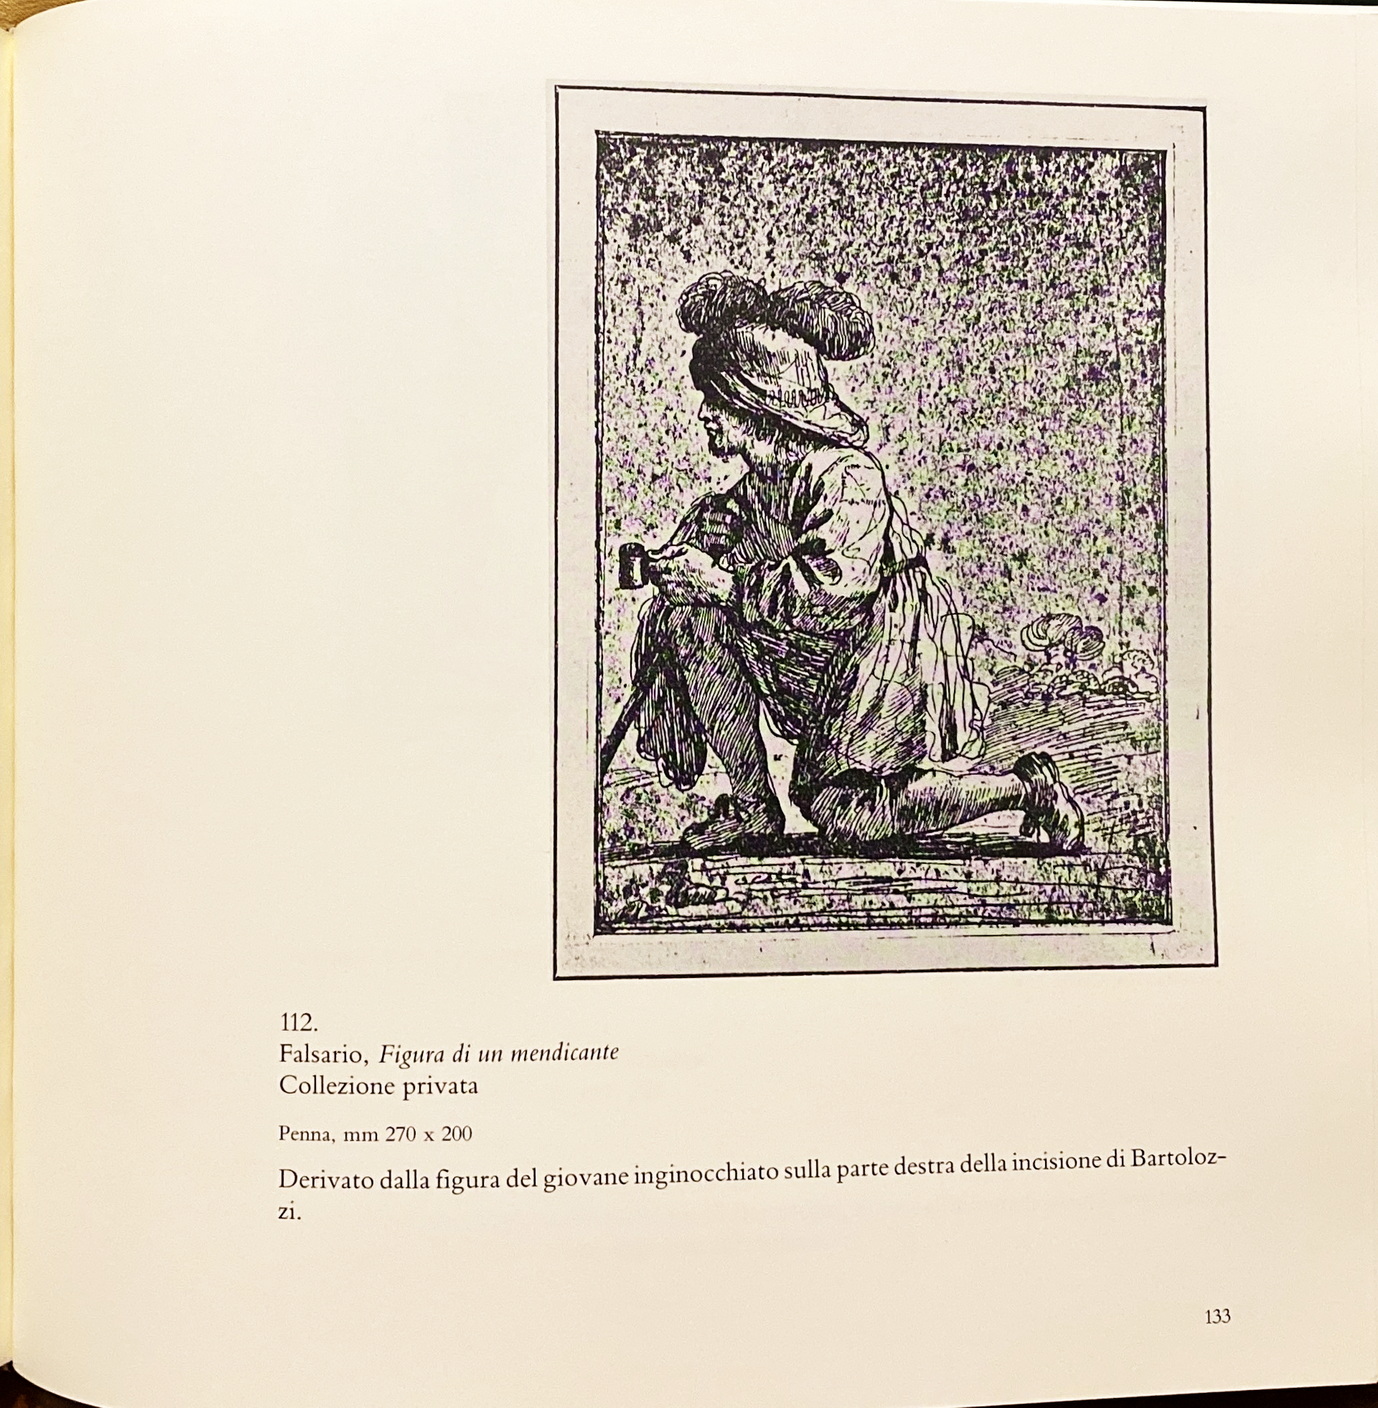 Prisco Bagni, Il Guercino e il suo falsario. I disegni di figura, Ed. Nuova Alfa, 1990